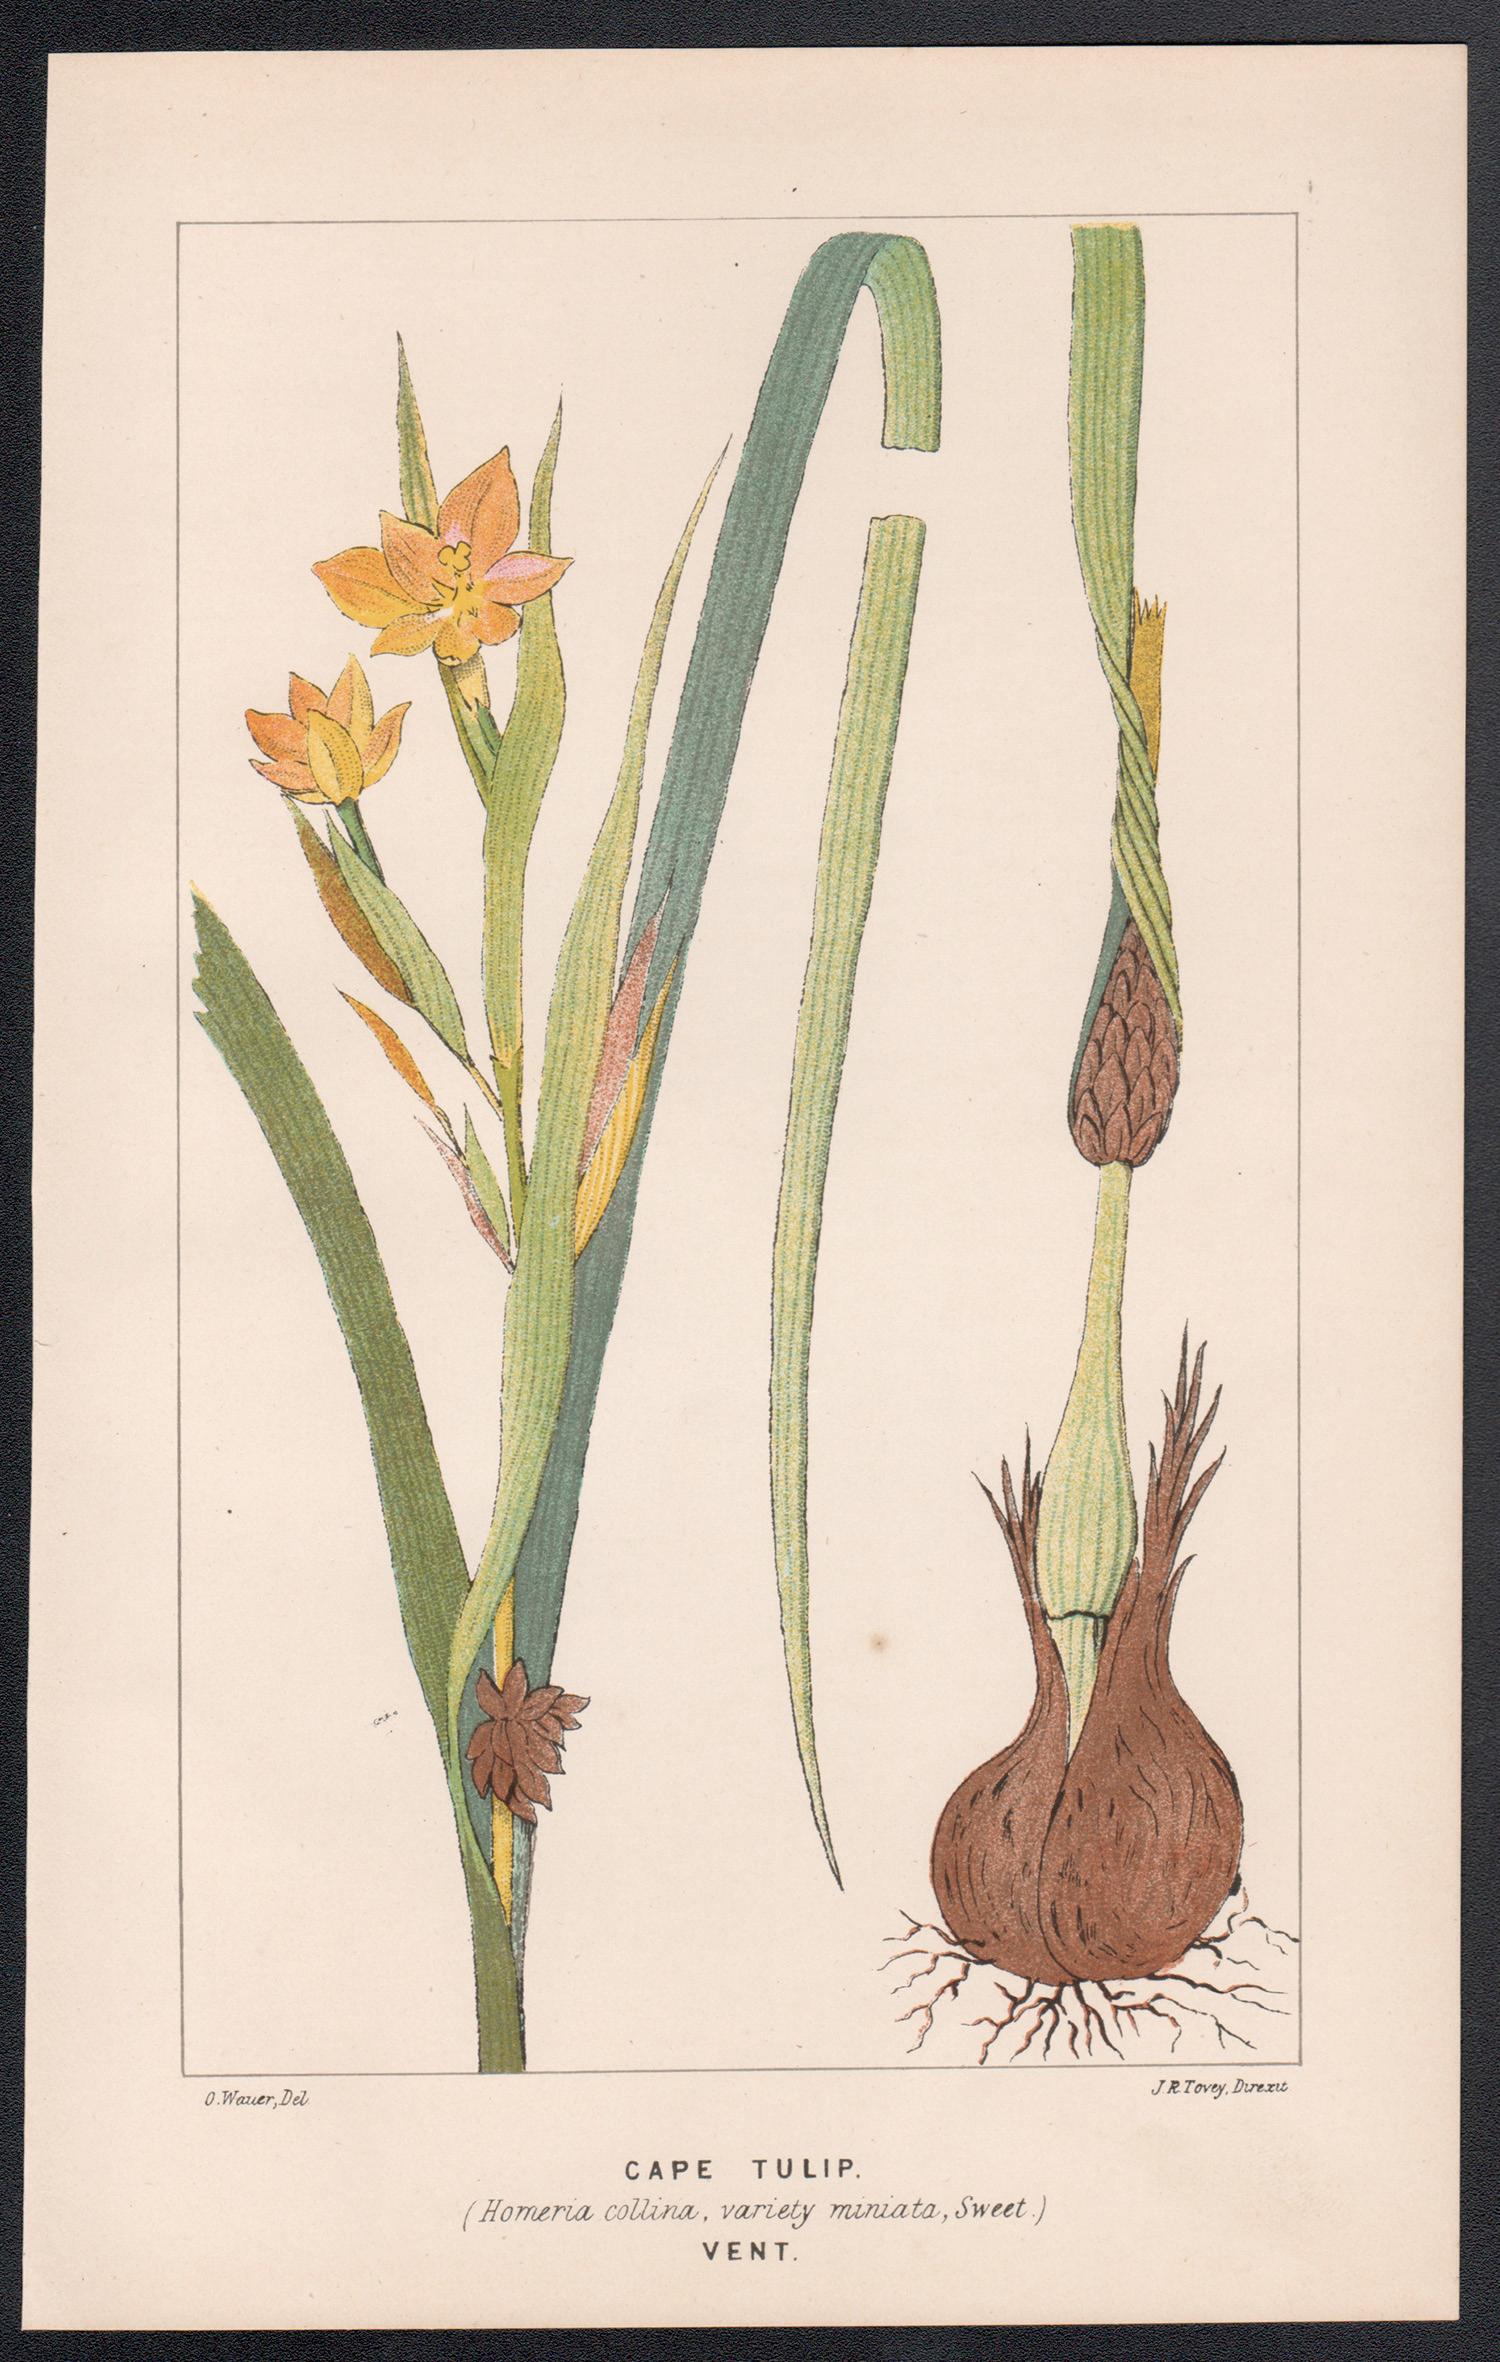 Kapuzenpullover (Homeria Collina), antike botanische Lithographie – Print von O Wauer